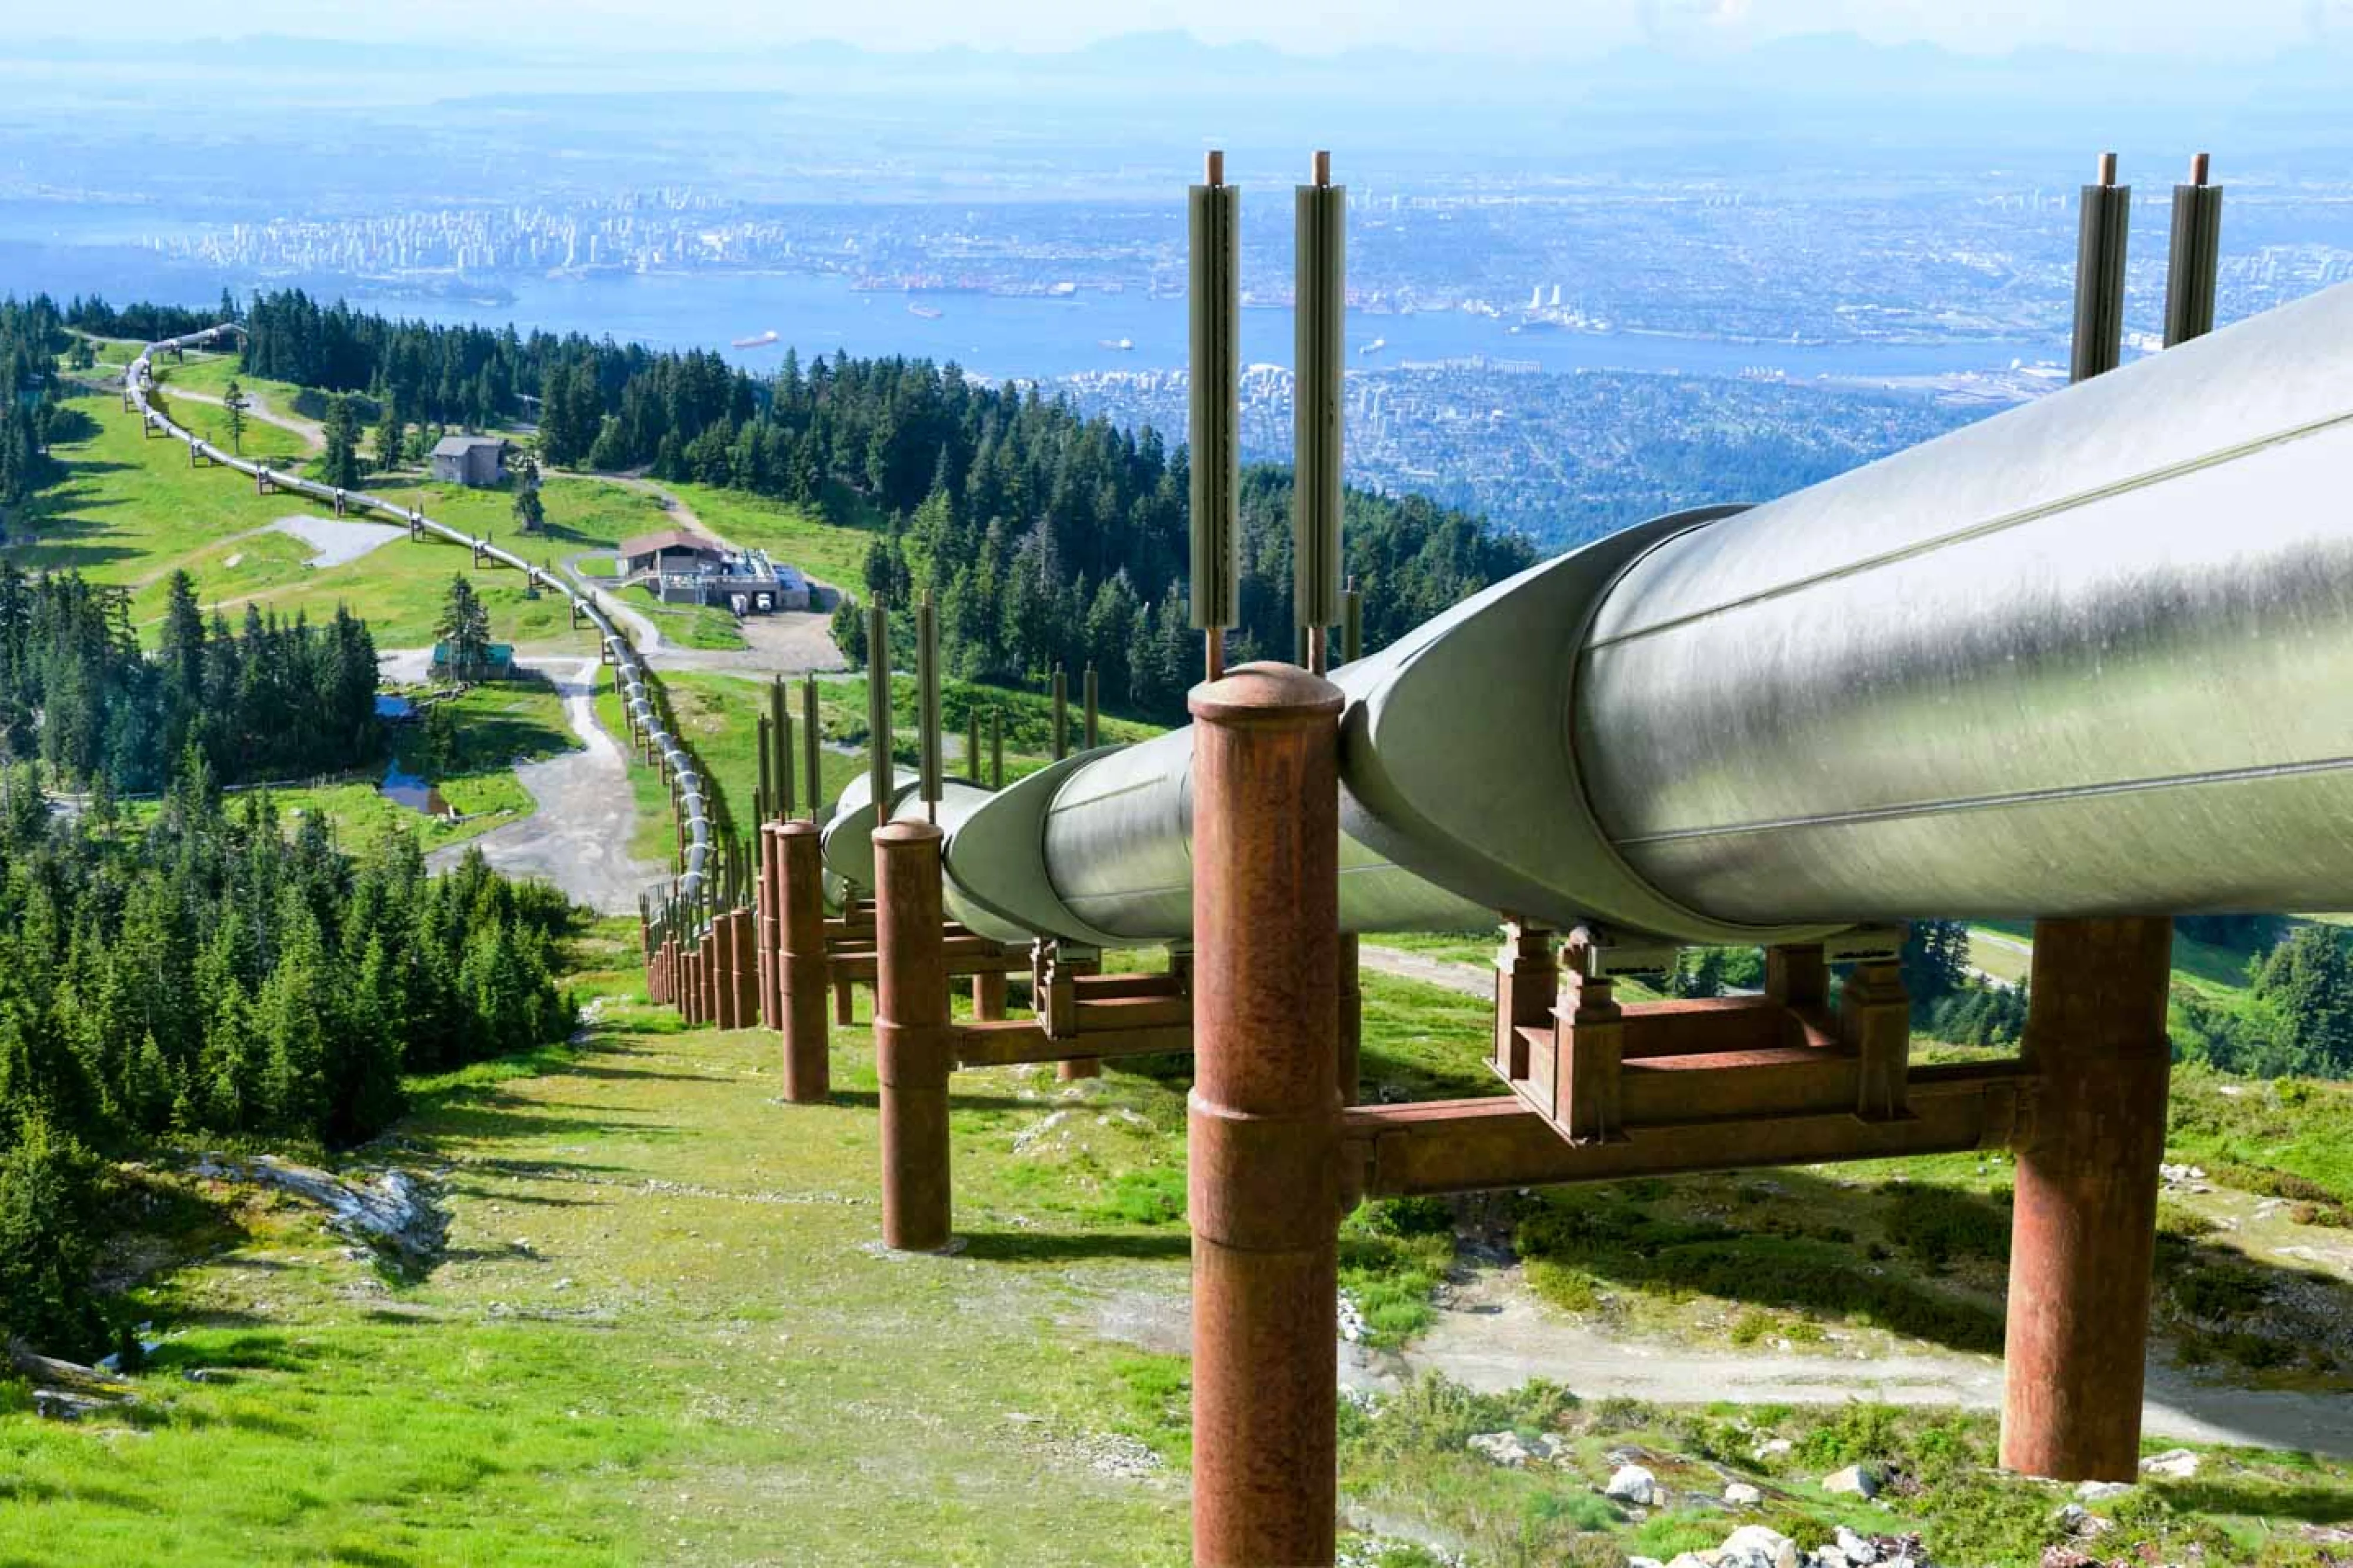 Oil pipeline runs down mountainside